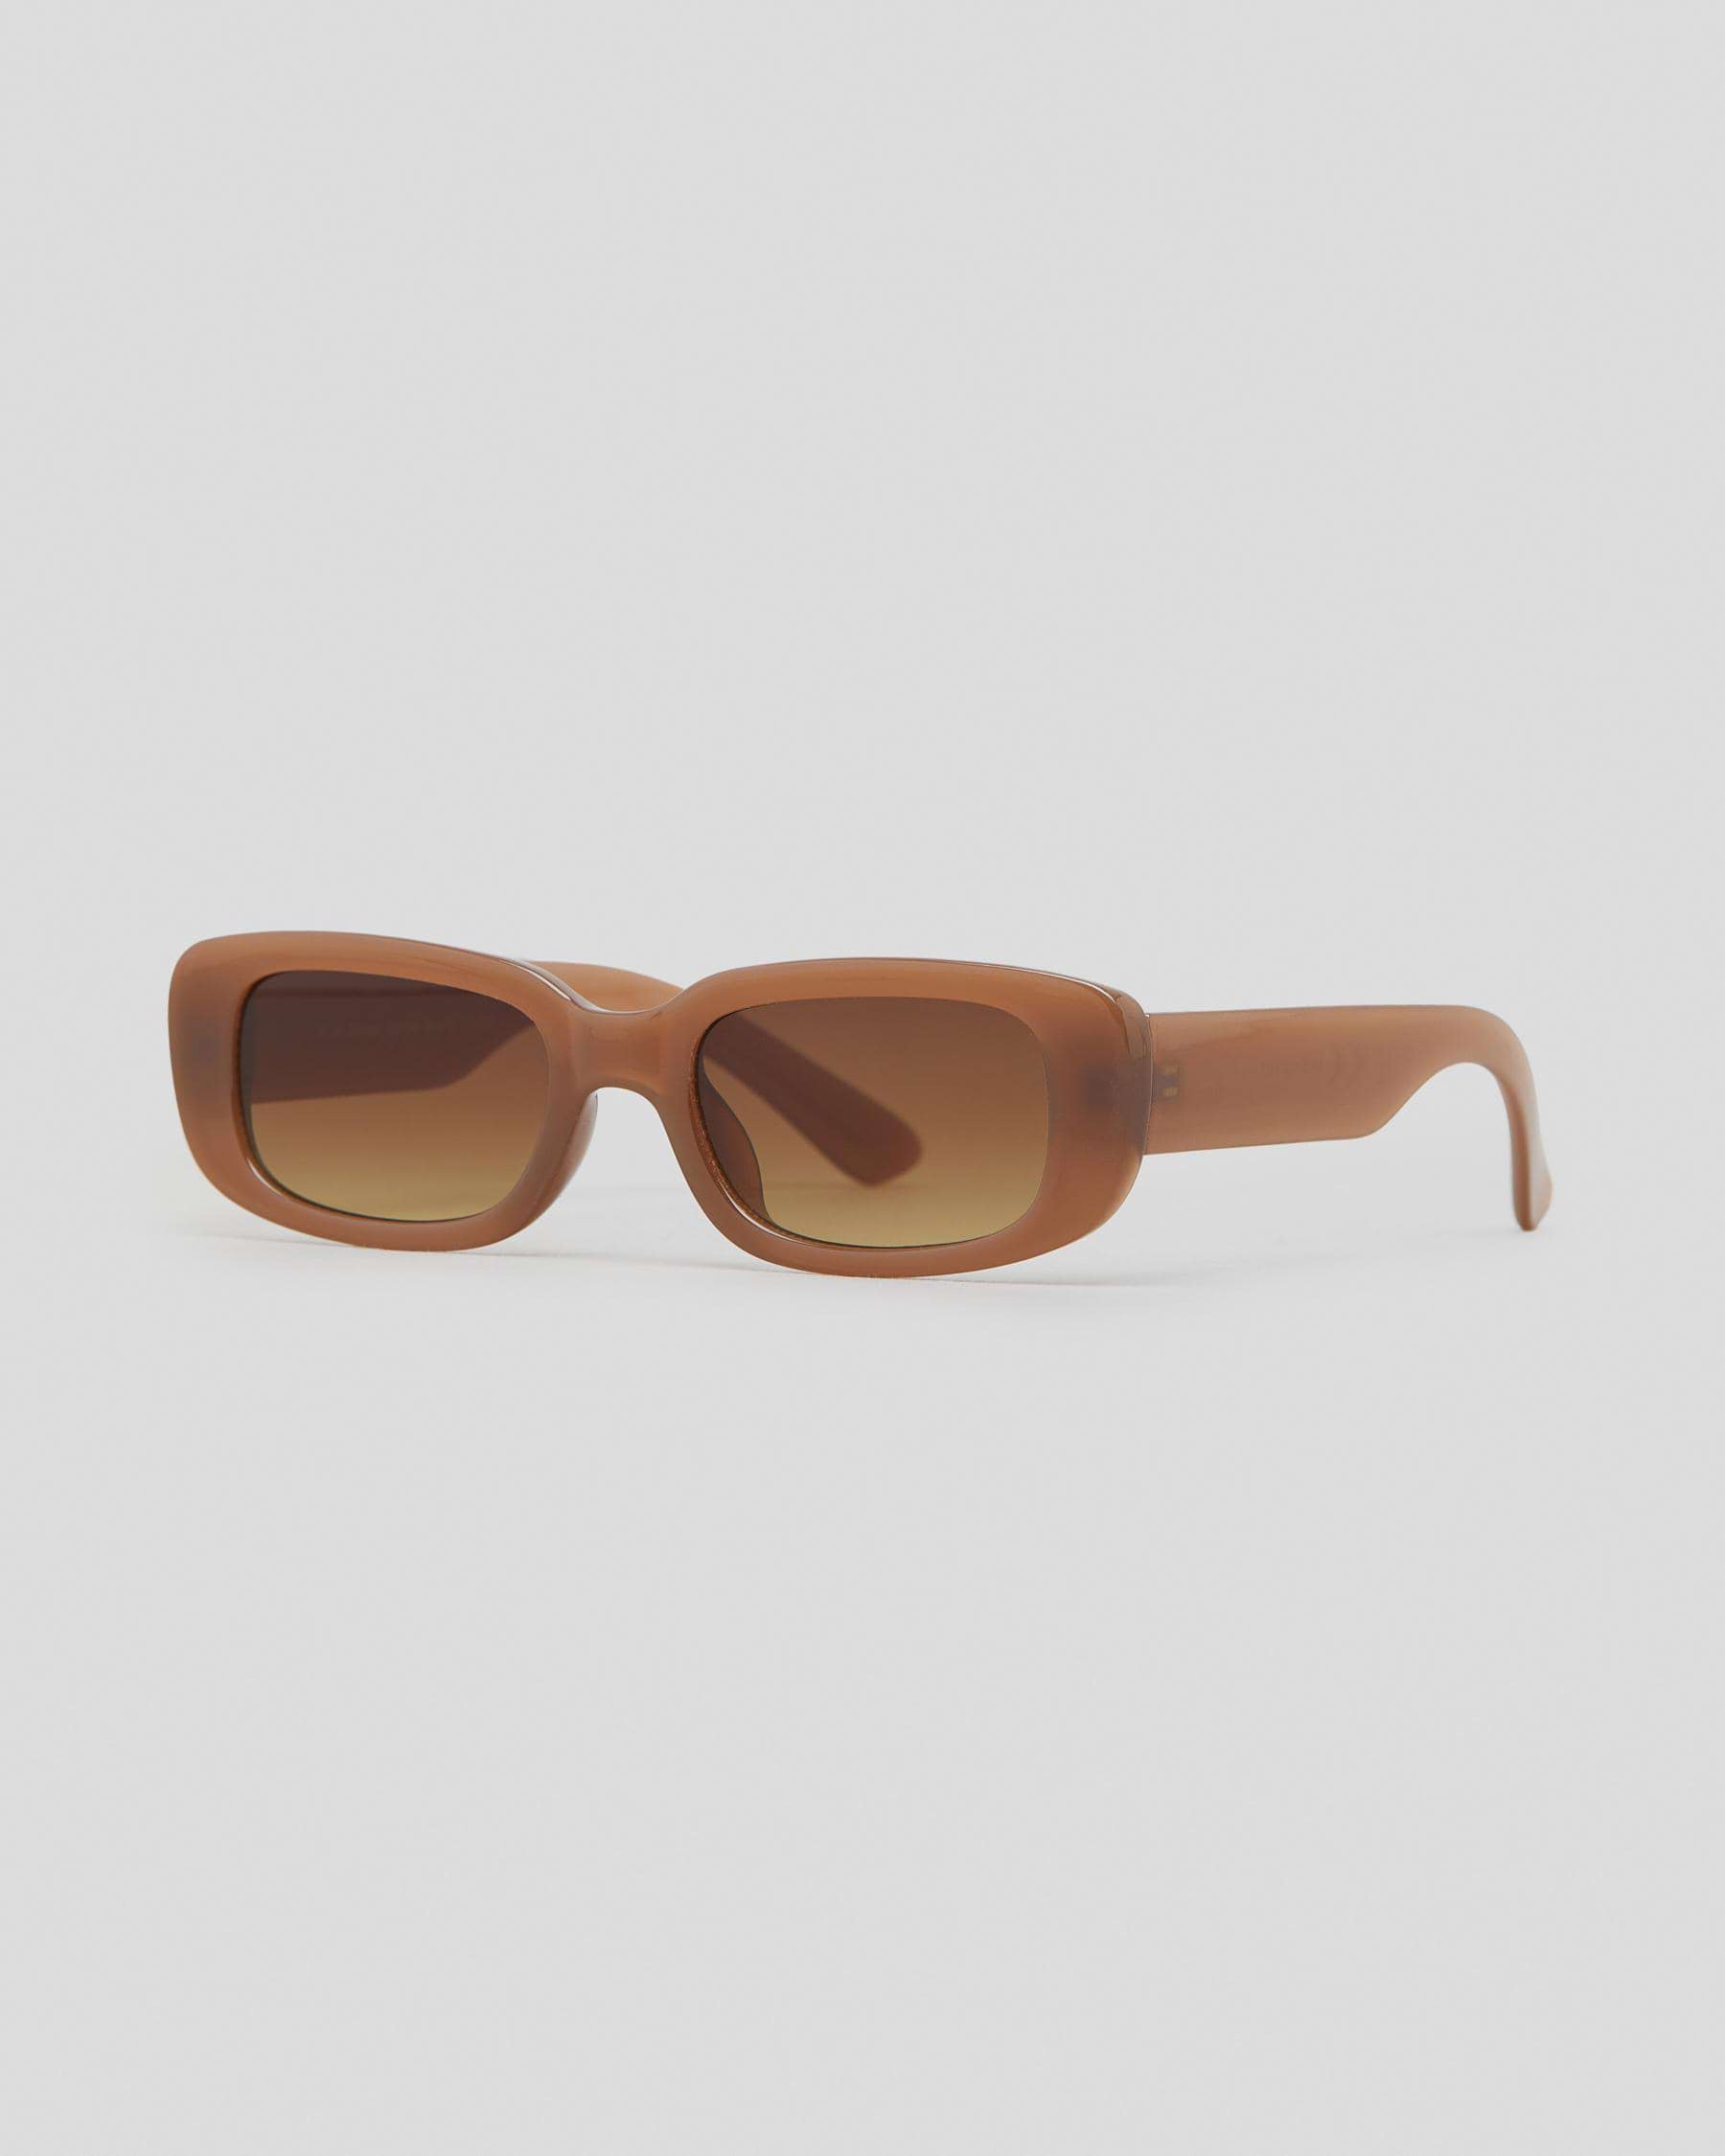 Indie Eyewear Bambi Sunglasses In Creme Brulee/brown Gradient - FREE ...